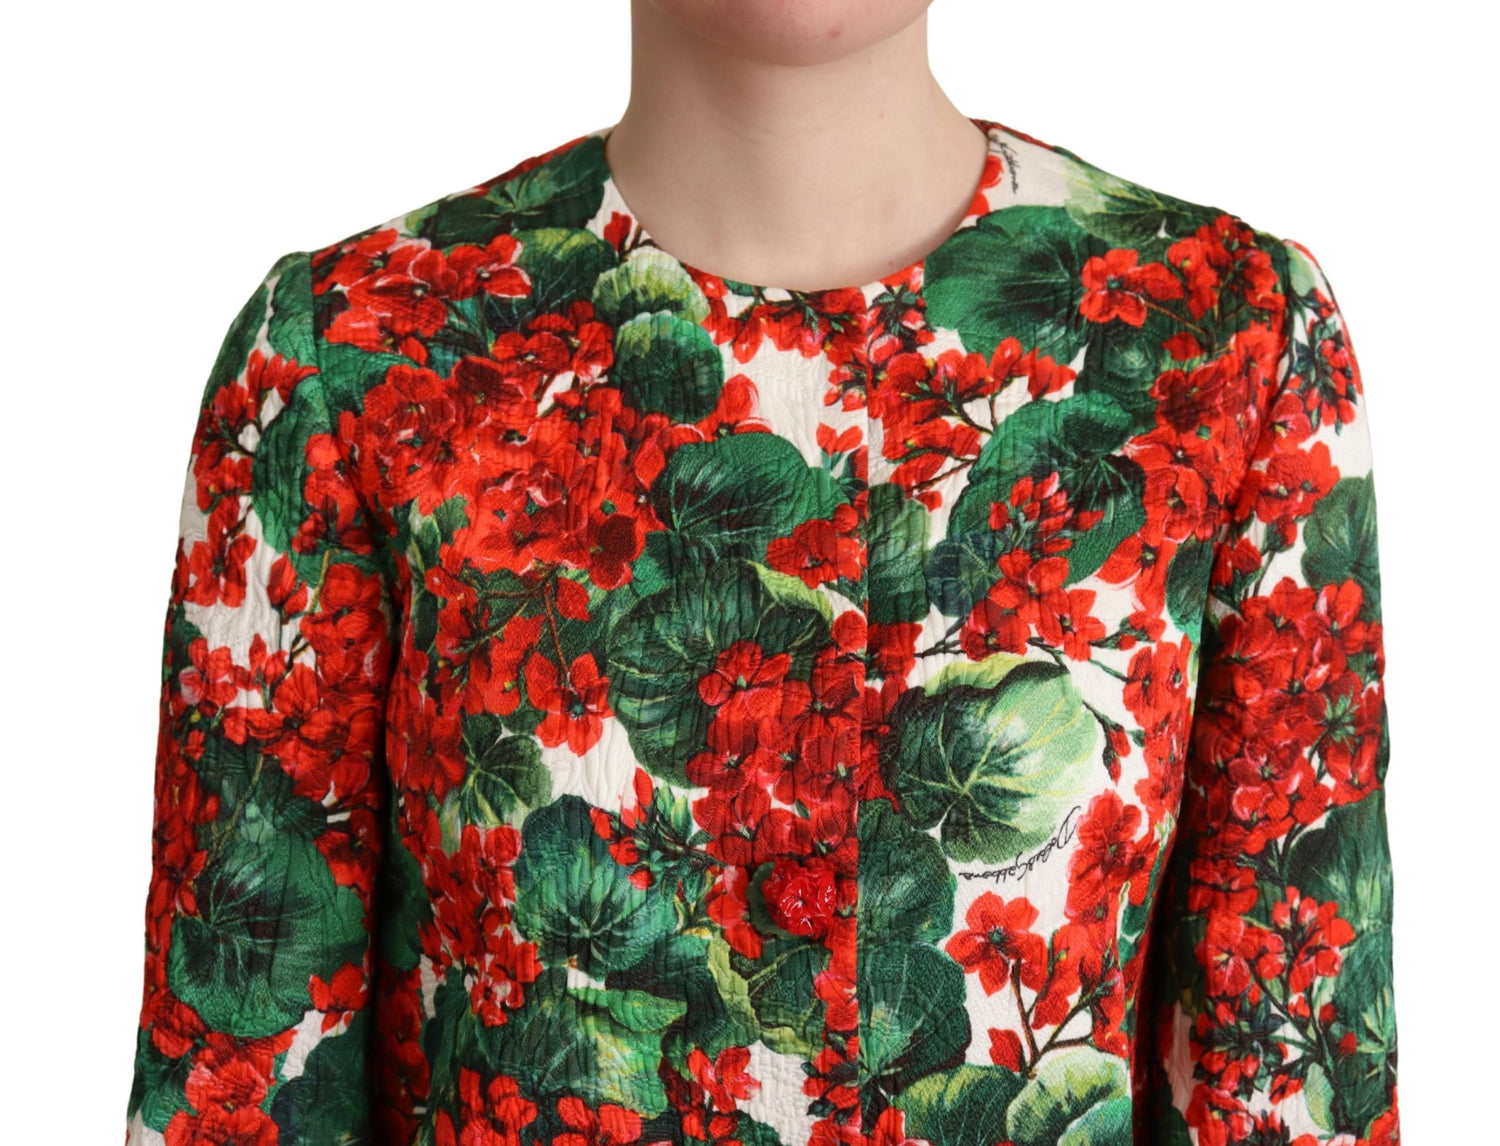 Multicolor Floral Brocade Blazer Jacket